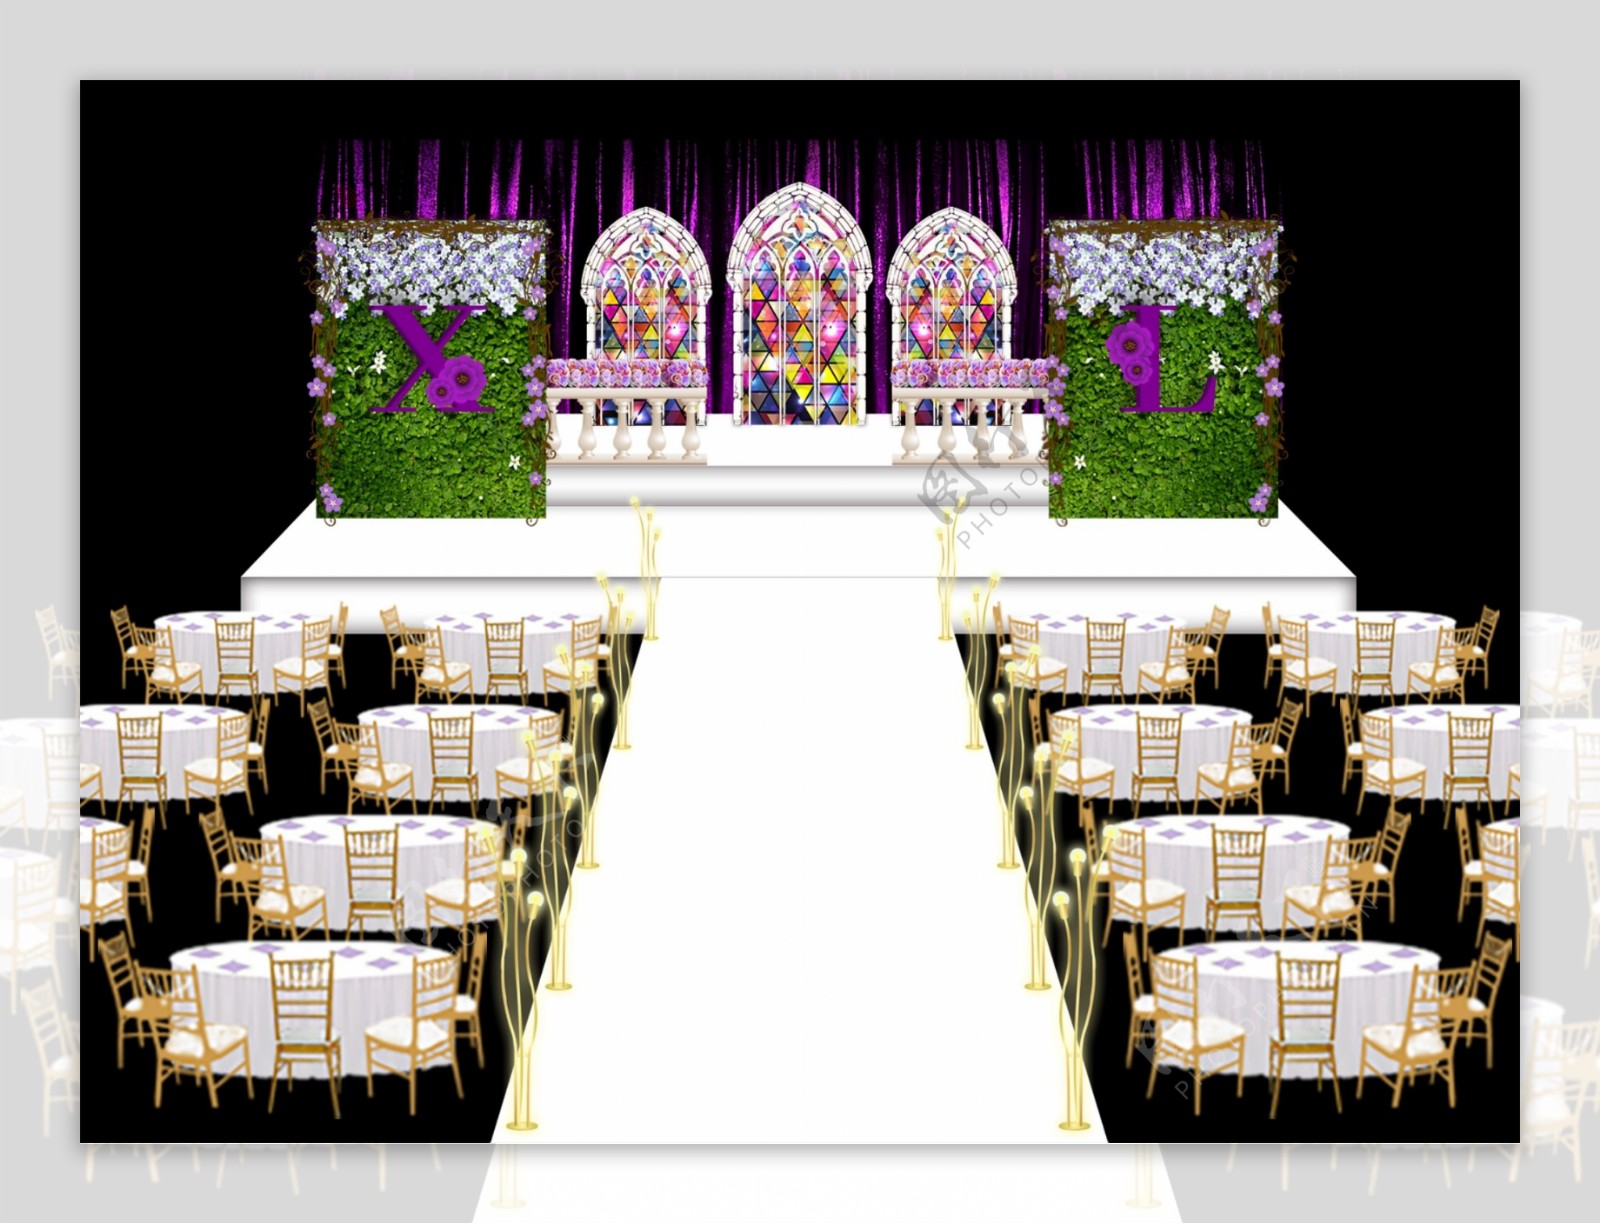 爱丽丝风格教堂花墙婚礼主背景效果图